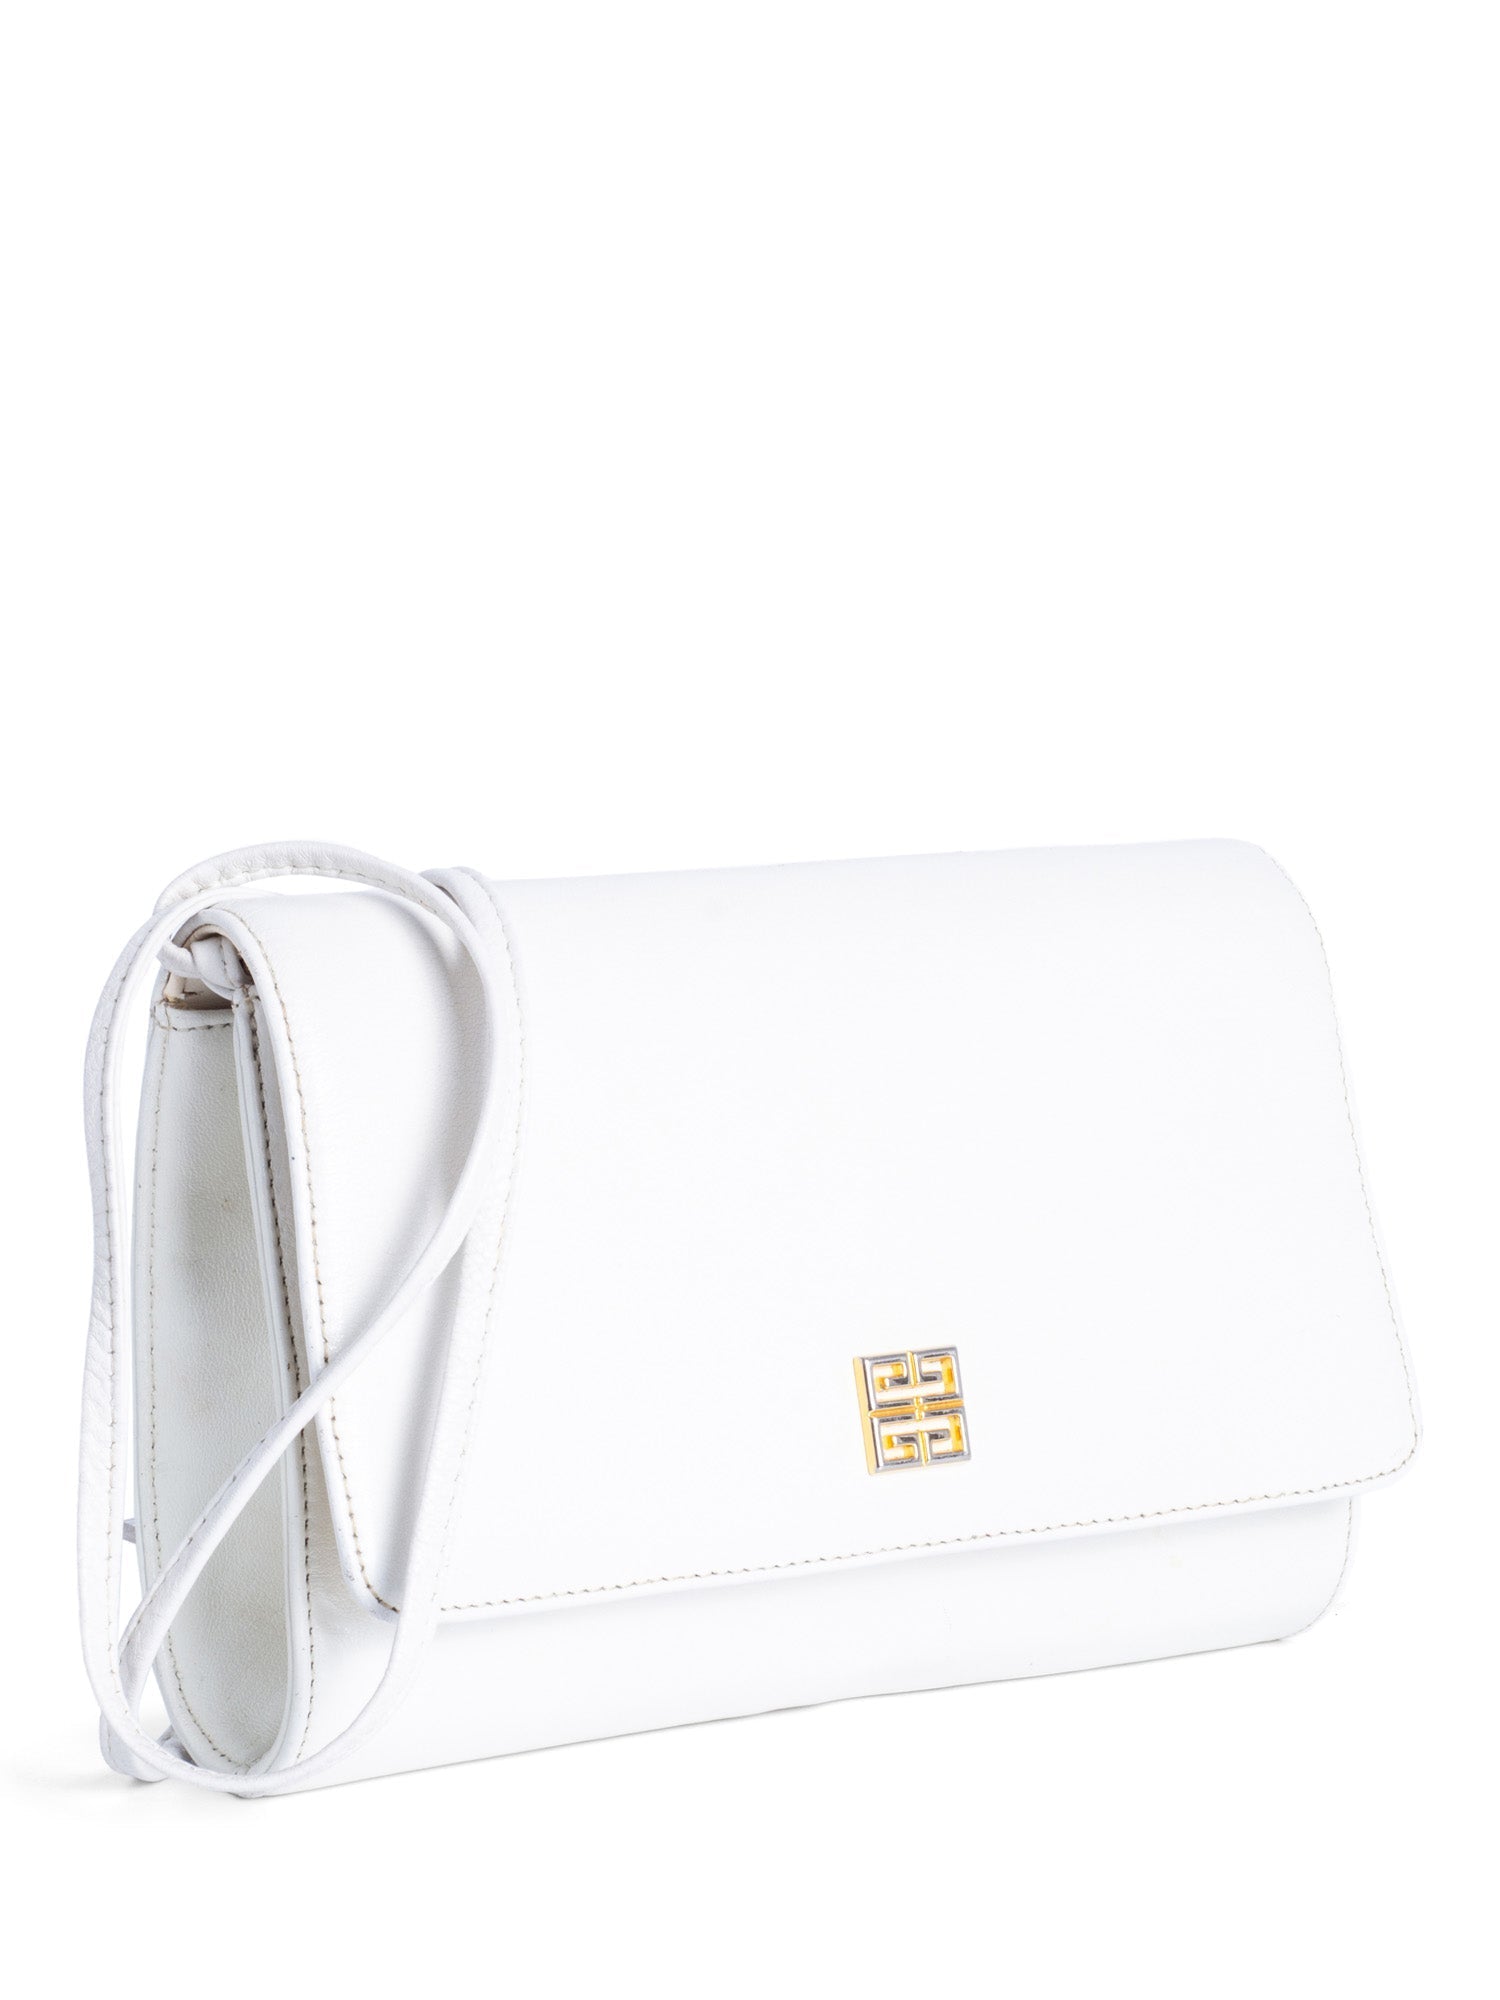 Givenchy Logo Leather Vintage Flap Messenger Bag White Gold-designer resale